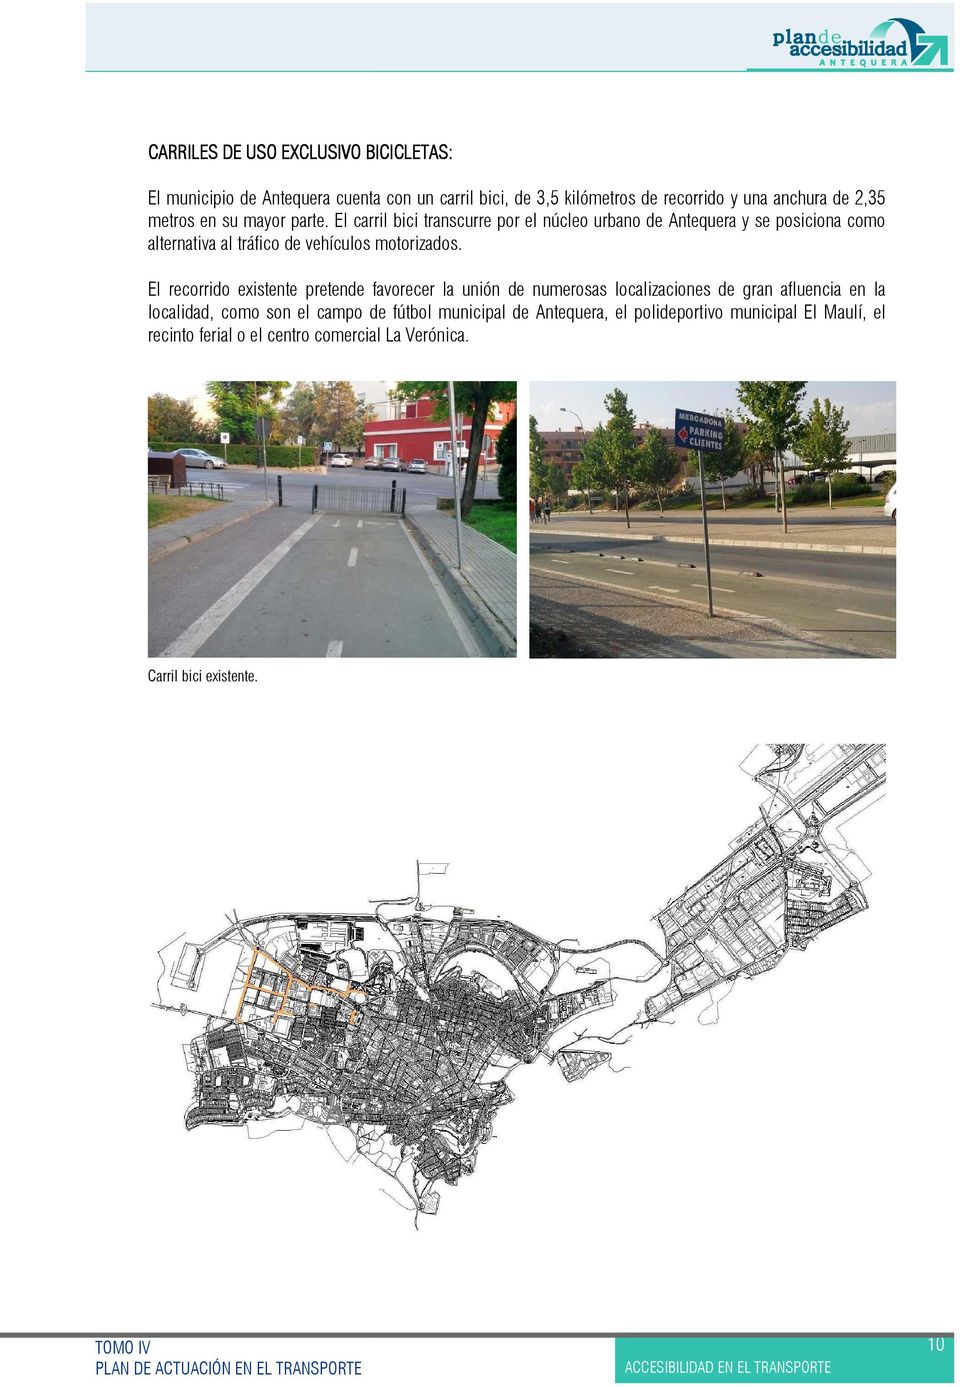 El carril bici transcurre por el núcleo urbano de Antequera y se posiciona como alternativa al tráfico de vehículos motorizados.